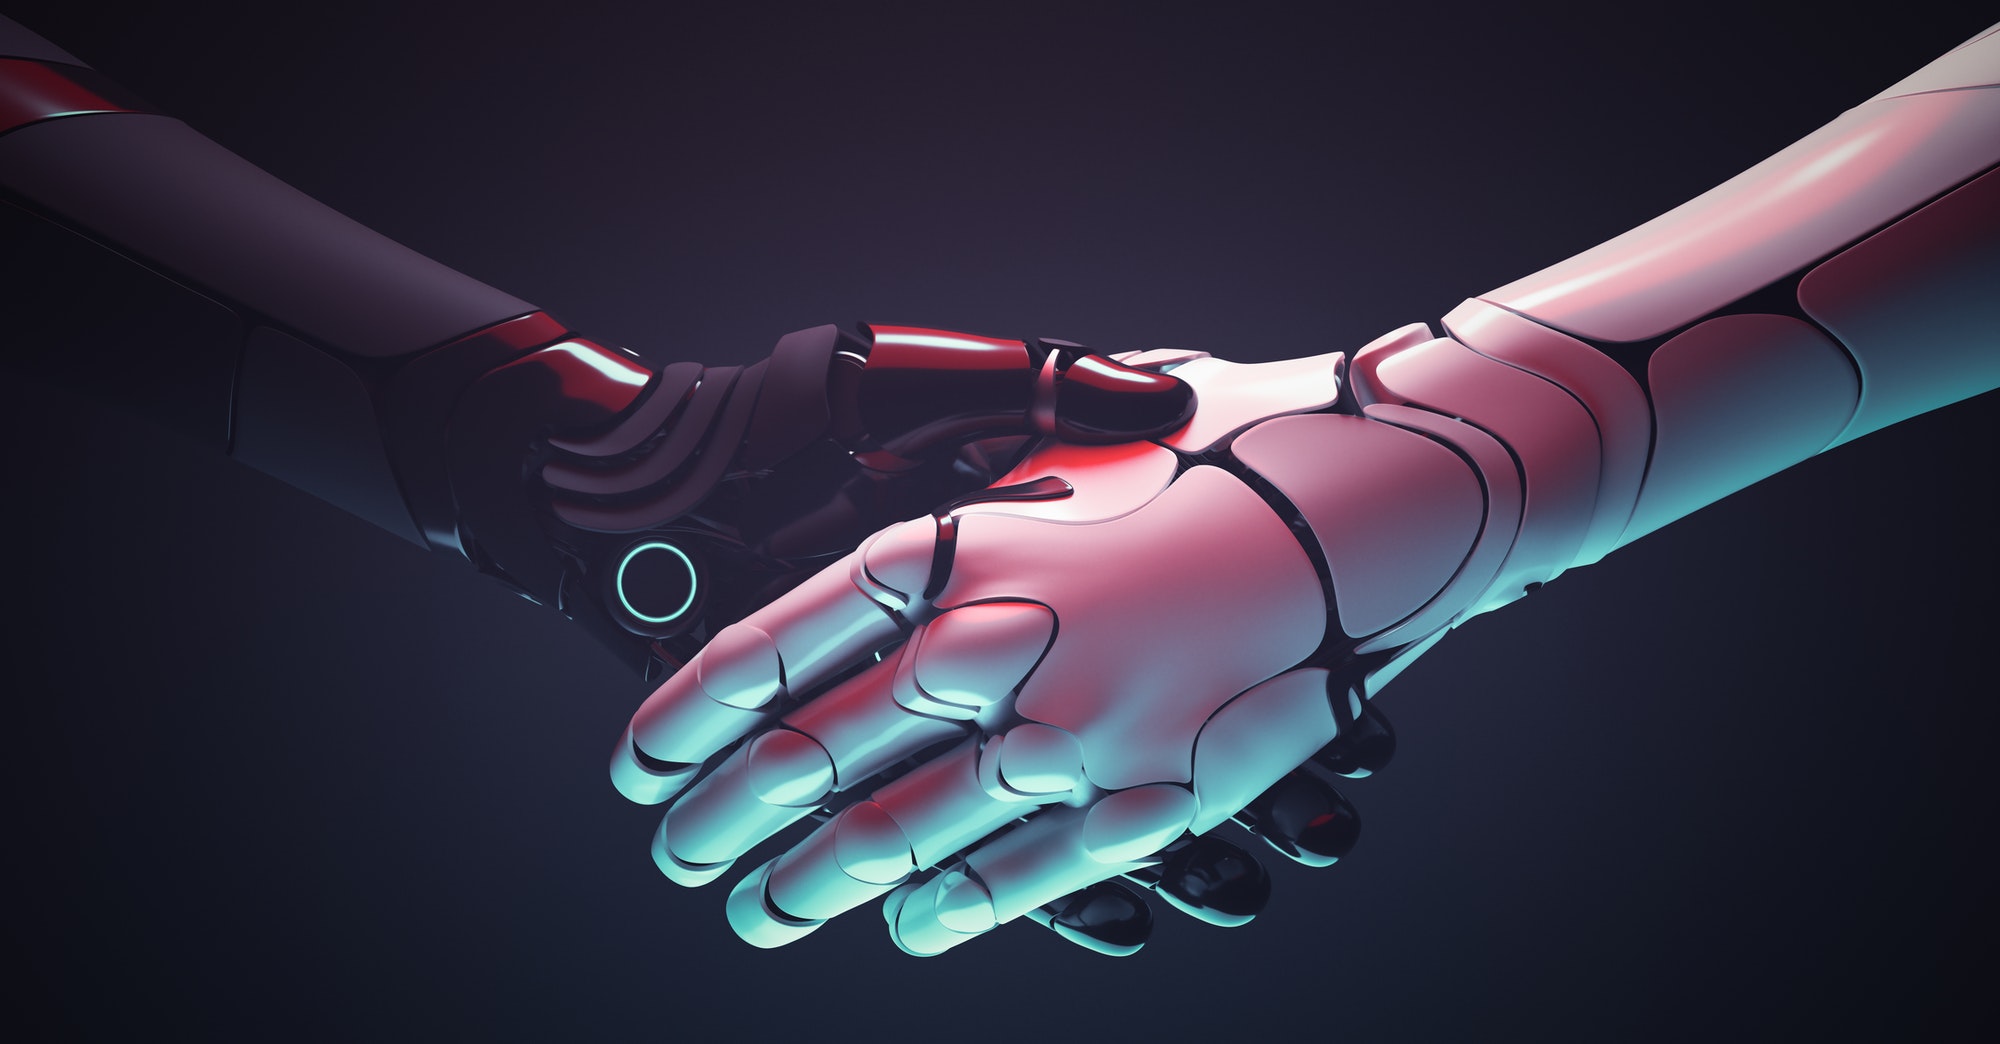 Robots handshake. Robotic hands gesture